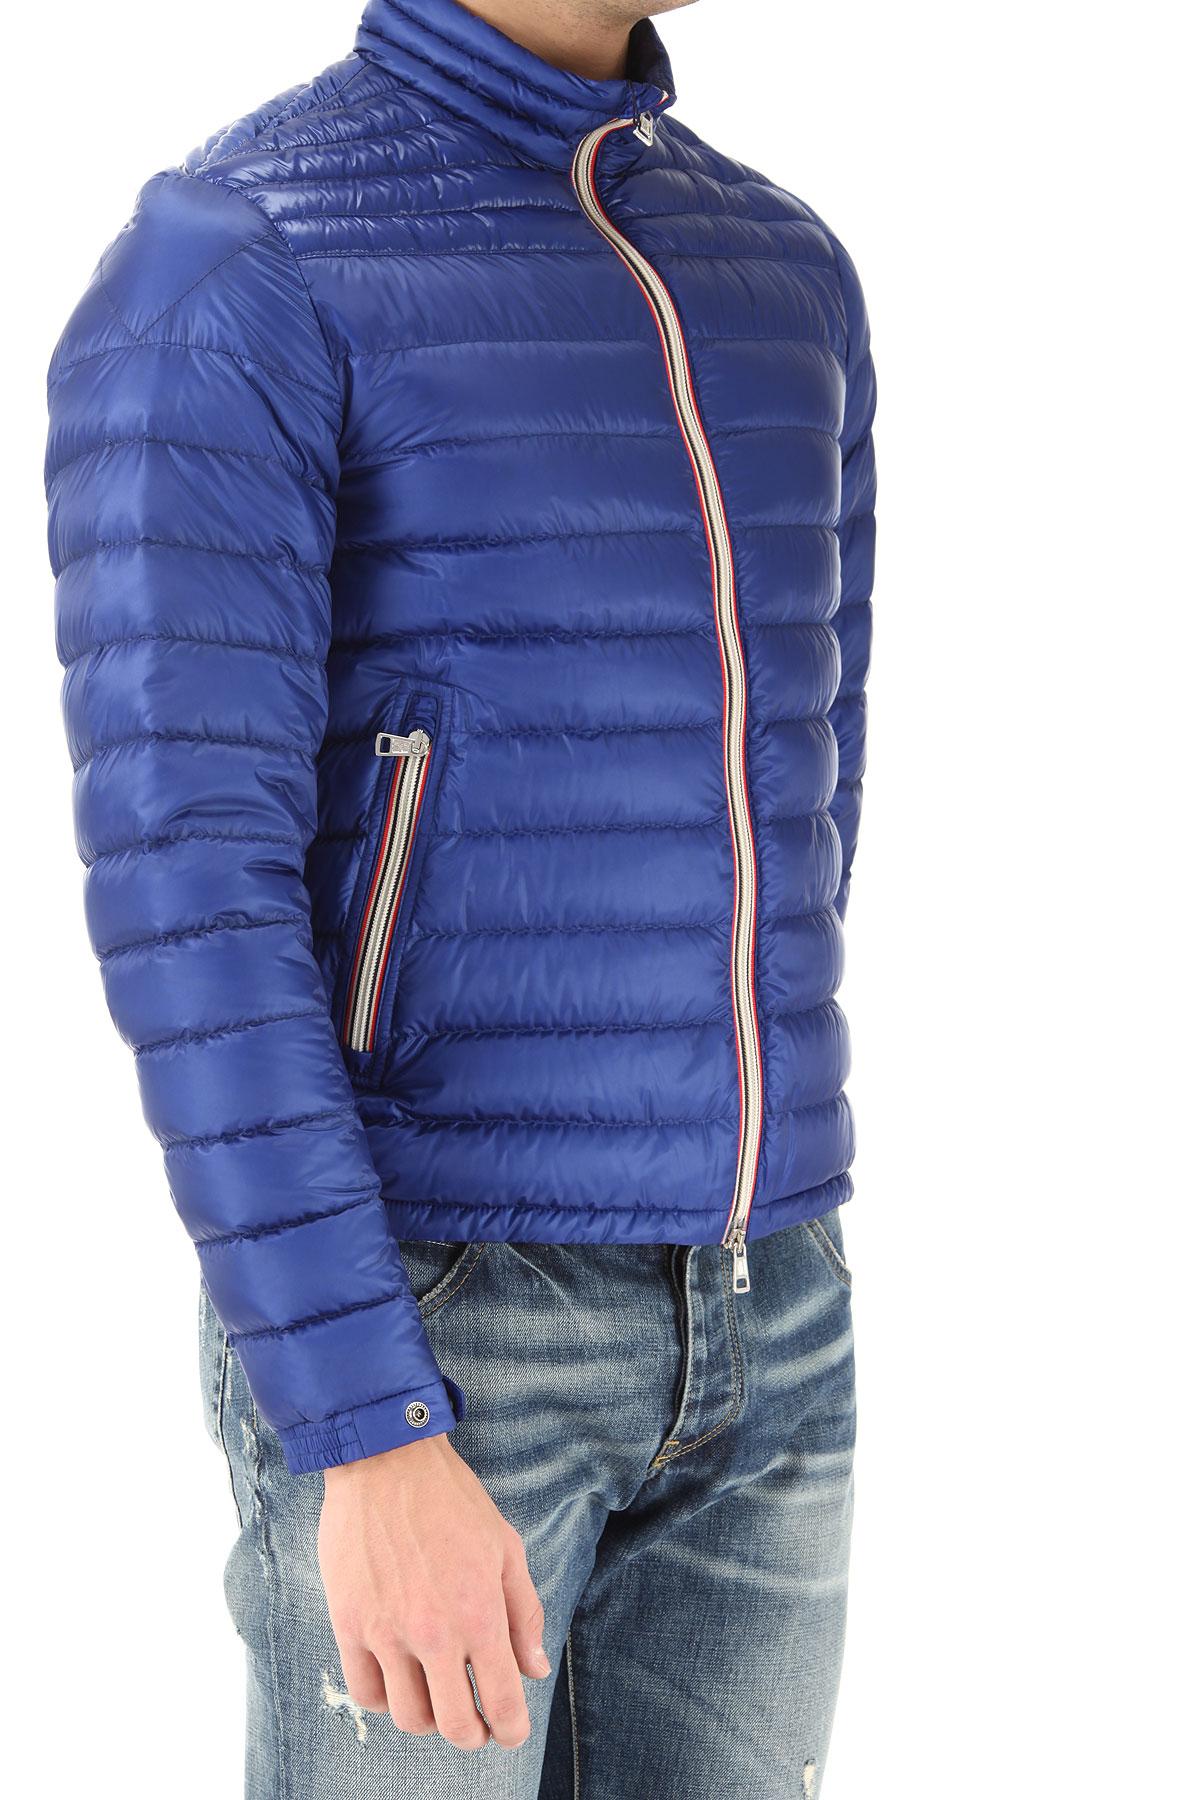 Moncler Jacket For Men On Sale In Outlet in Blue for Men - Lyst